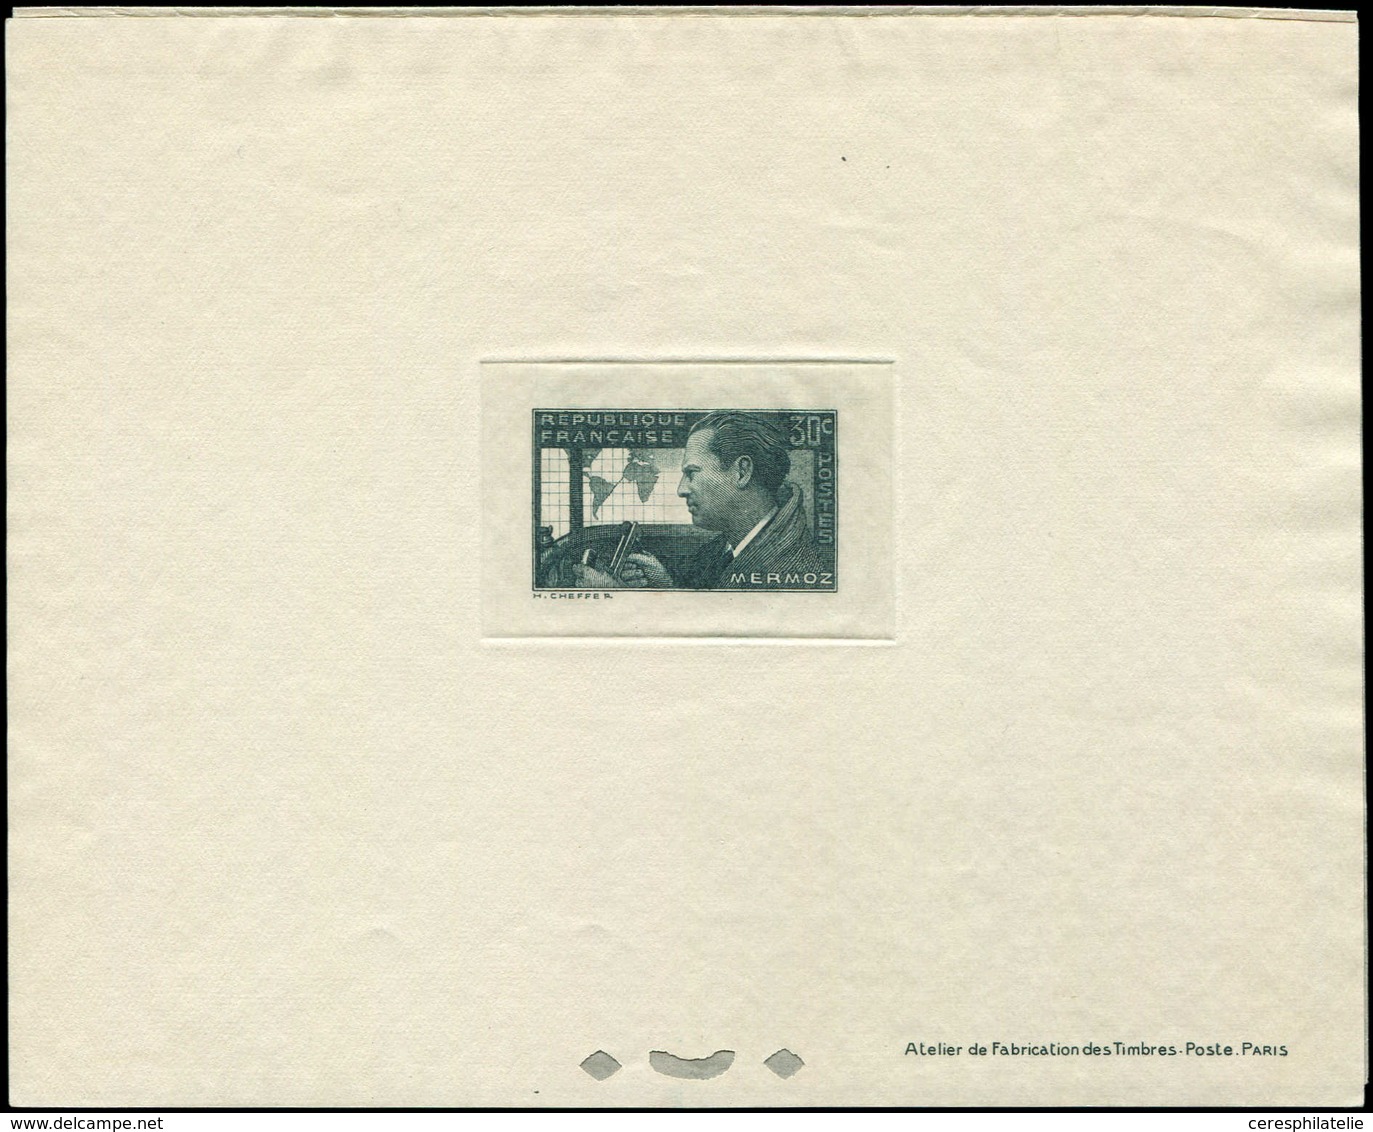 Collection Henri Cheffer - 337   Mermoz, 30c. Vert-gris, épreuve De Luxe, TB - Unclassified